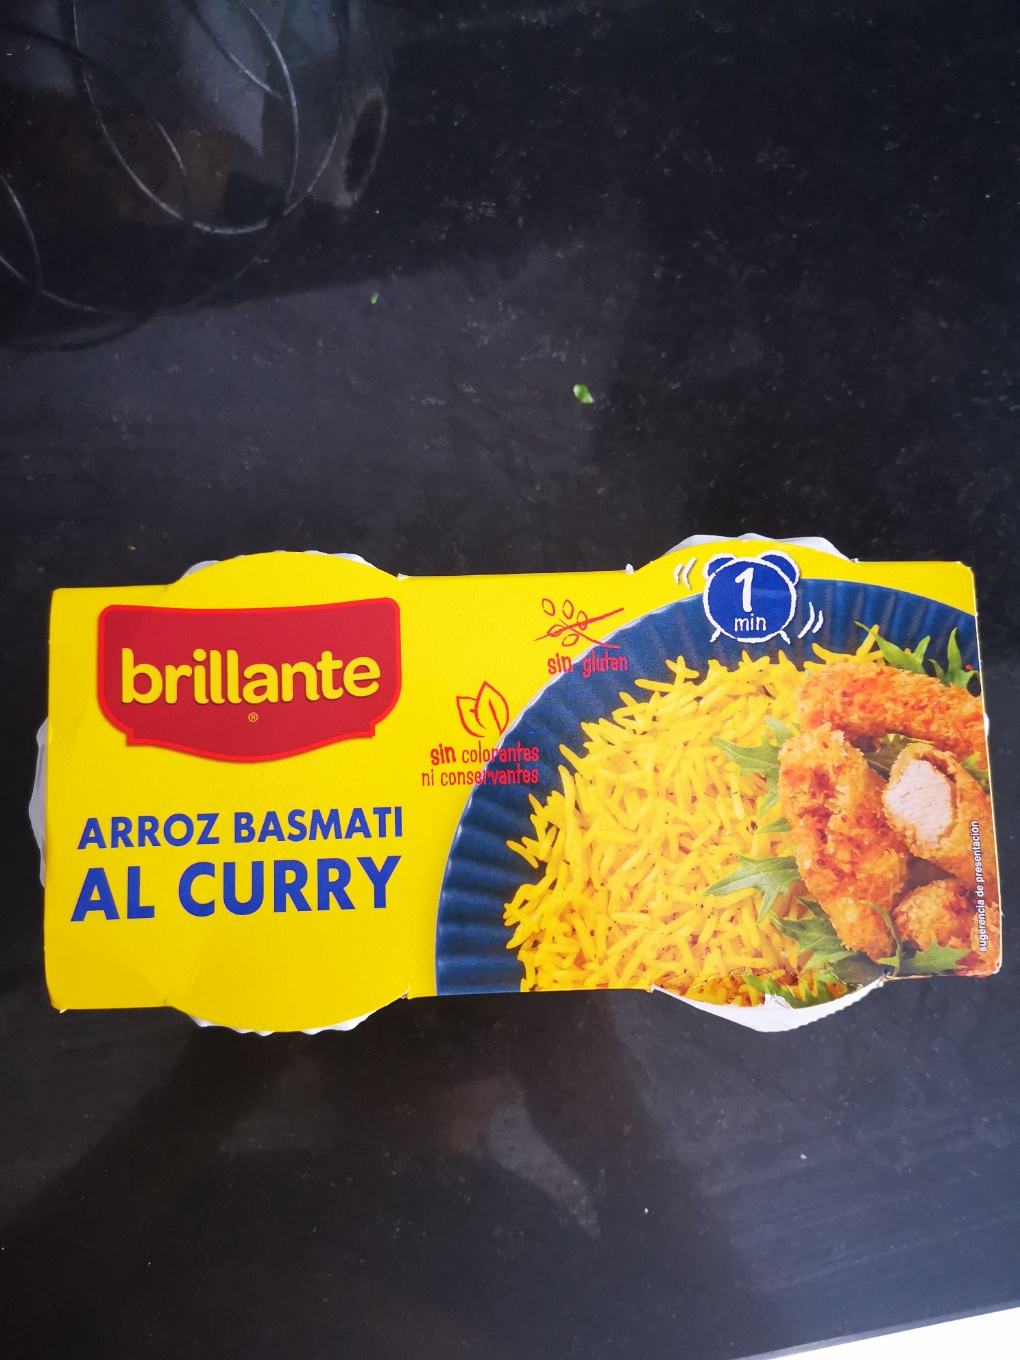 Arroz basmati al curry